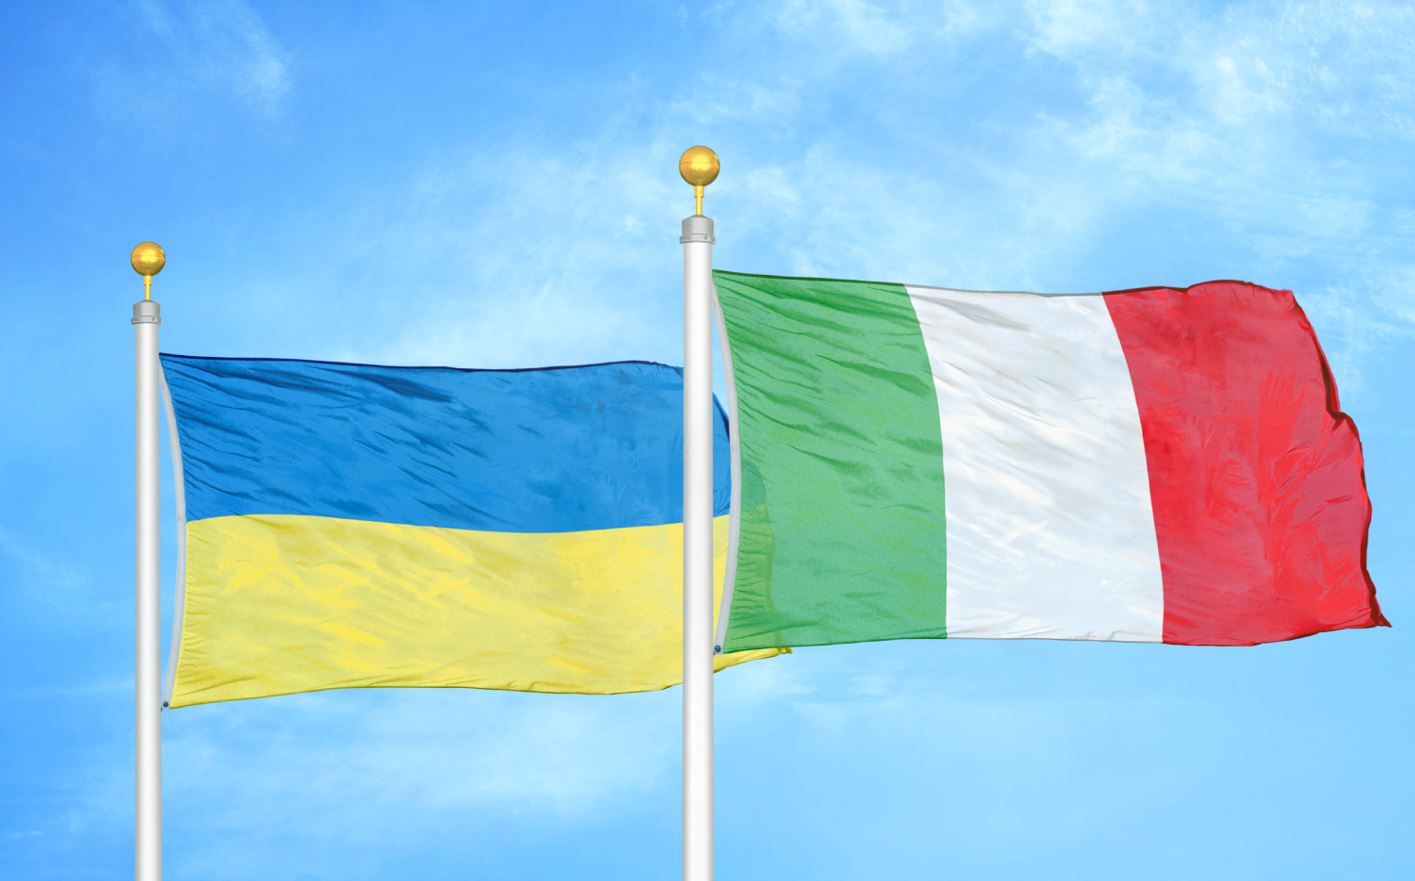 أوكرانيا وإيطاليا توقعان مذكرة تفاهم في مجال الطاقة المتجددة